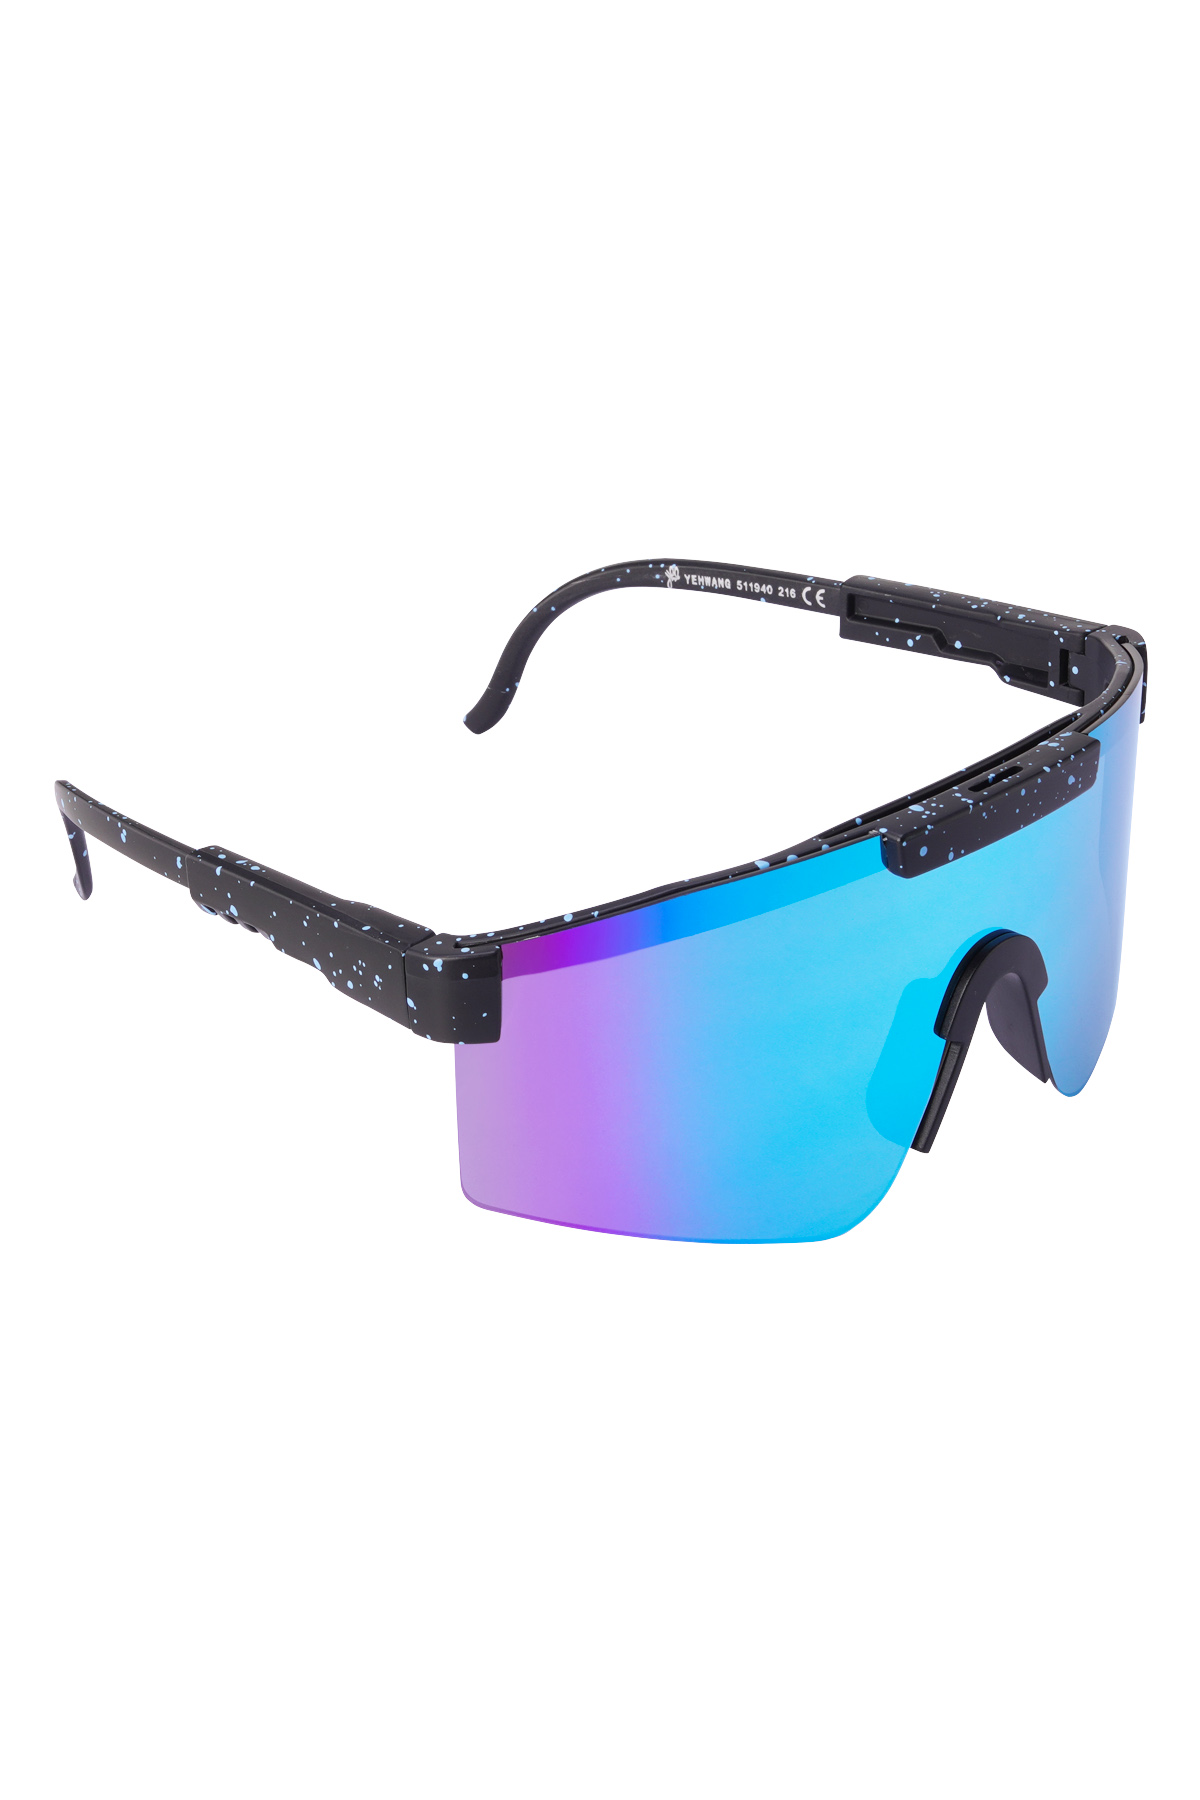 Güneş gözlüğü baskılı renkli lensler - siyah h5 